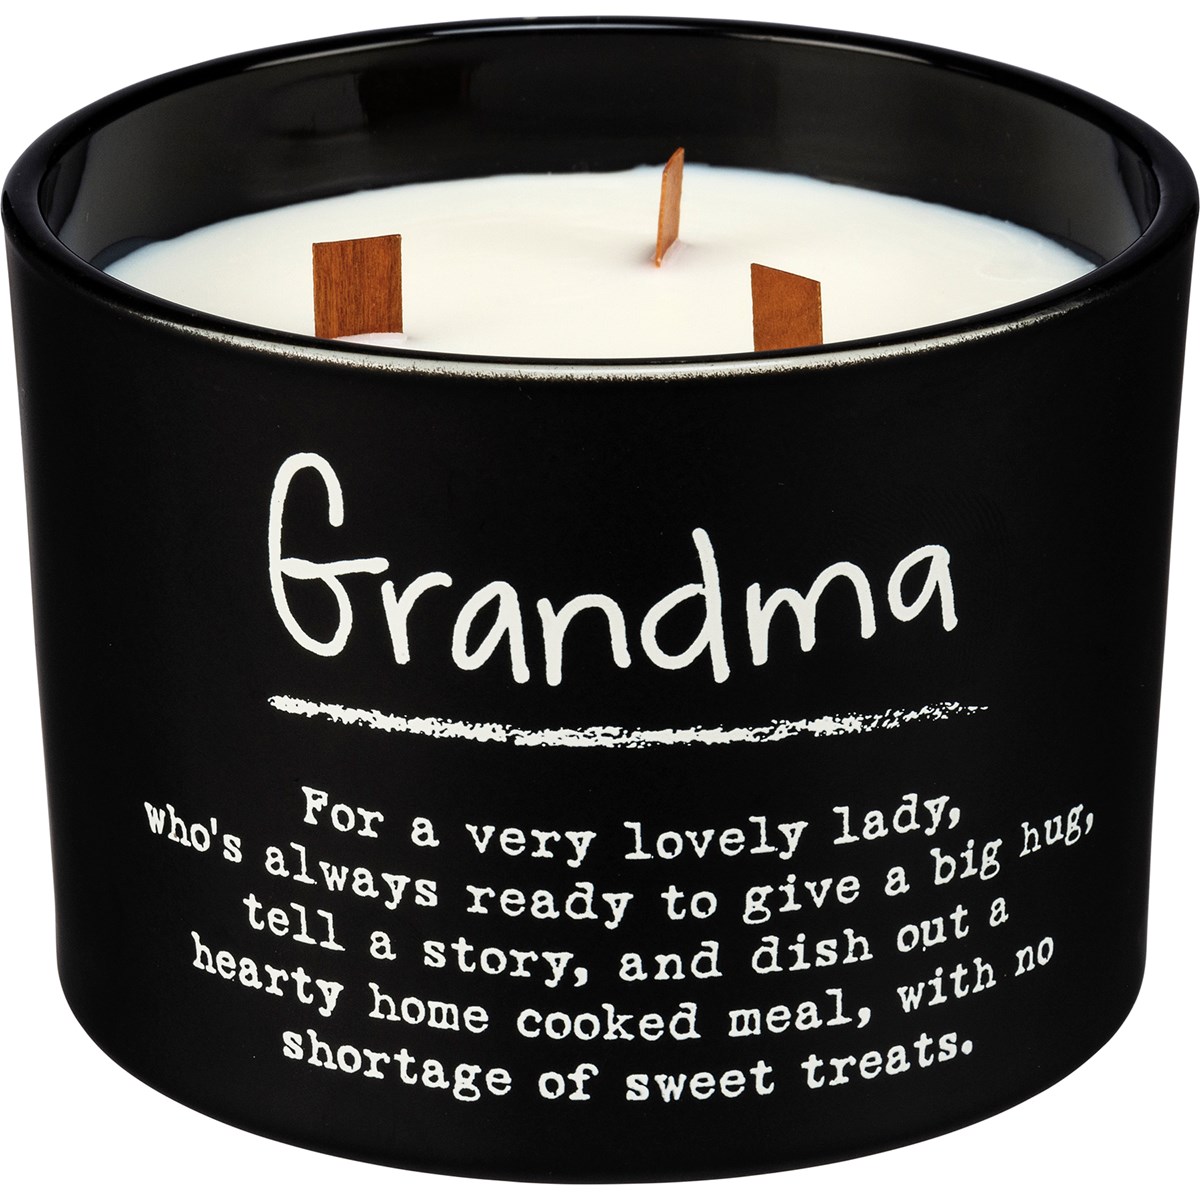 Grandma Candle - Soy Wax, Glass, Wood